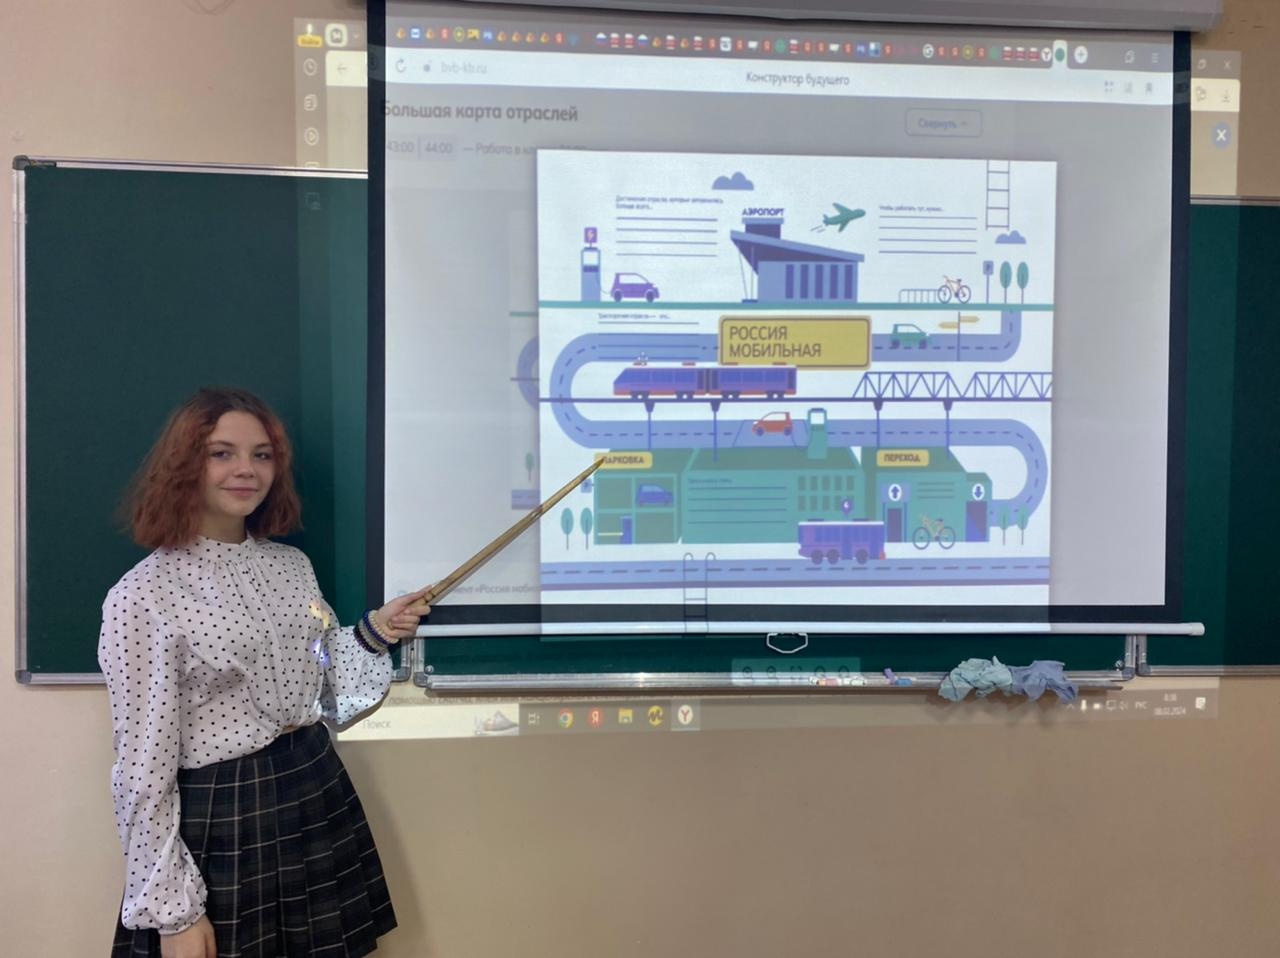 8 февраля в нашей школе прошел профориентационный урок на тему «Россия мобильная: узнаю о профессиях и достижениях в транспортной отрасли».